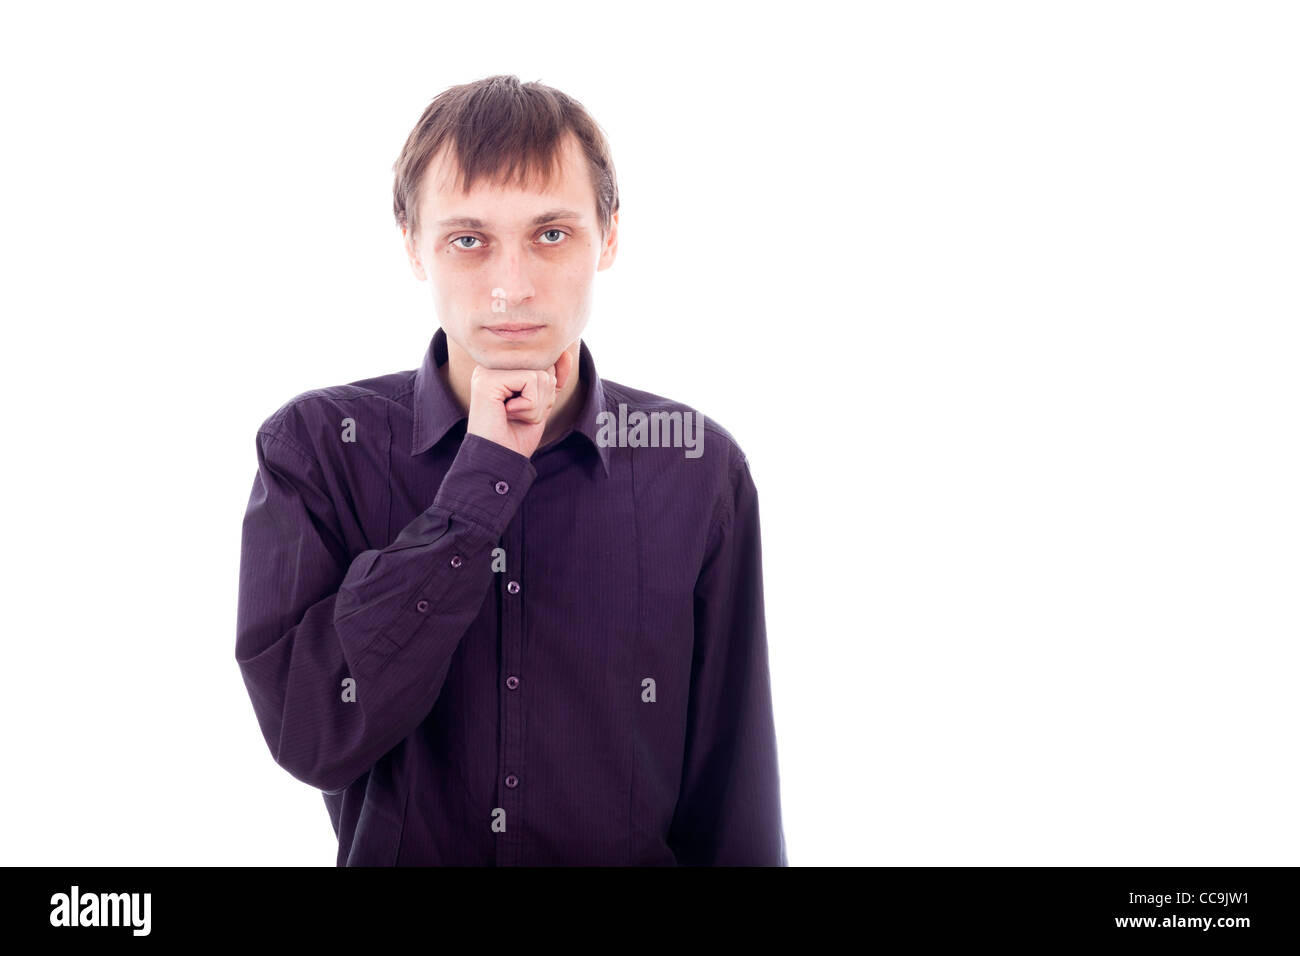 Portrait of weirdo man thinking, isolated on white background. Stock Photo